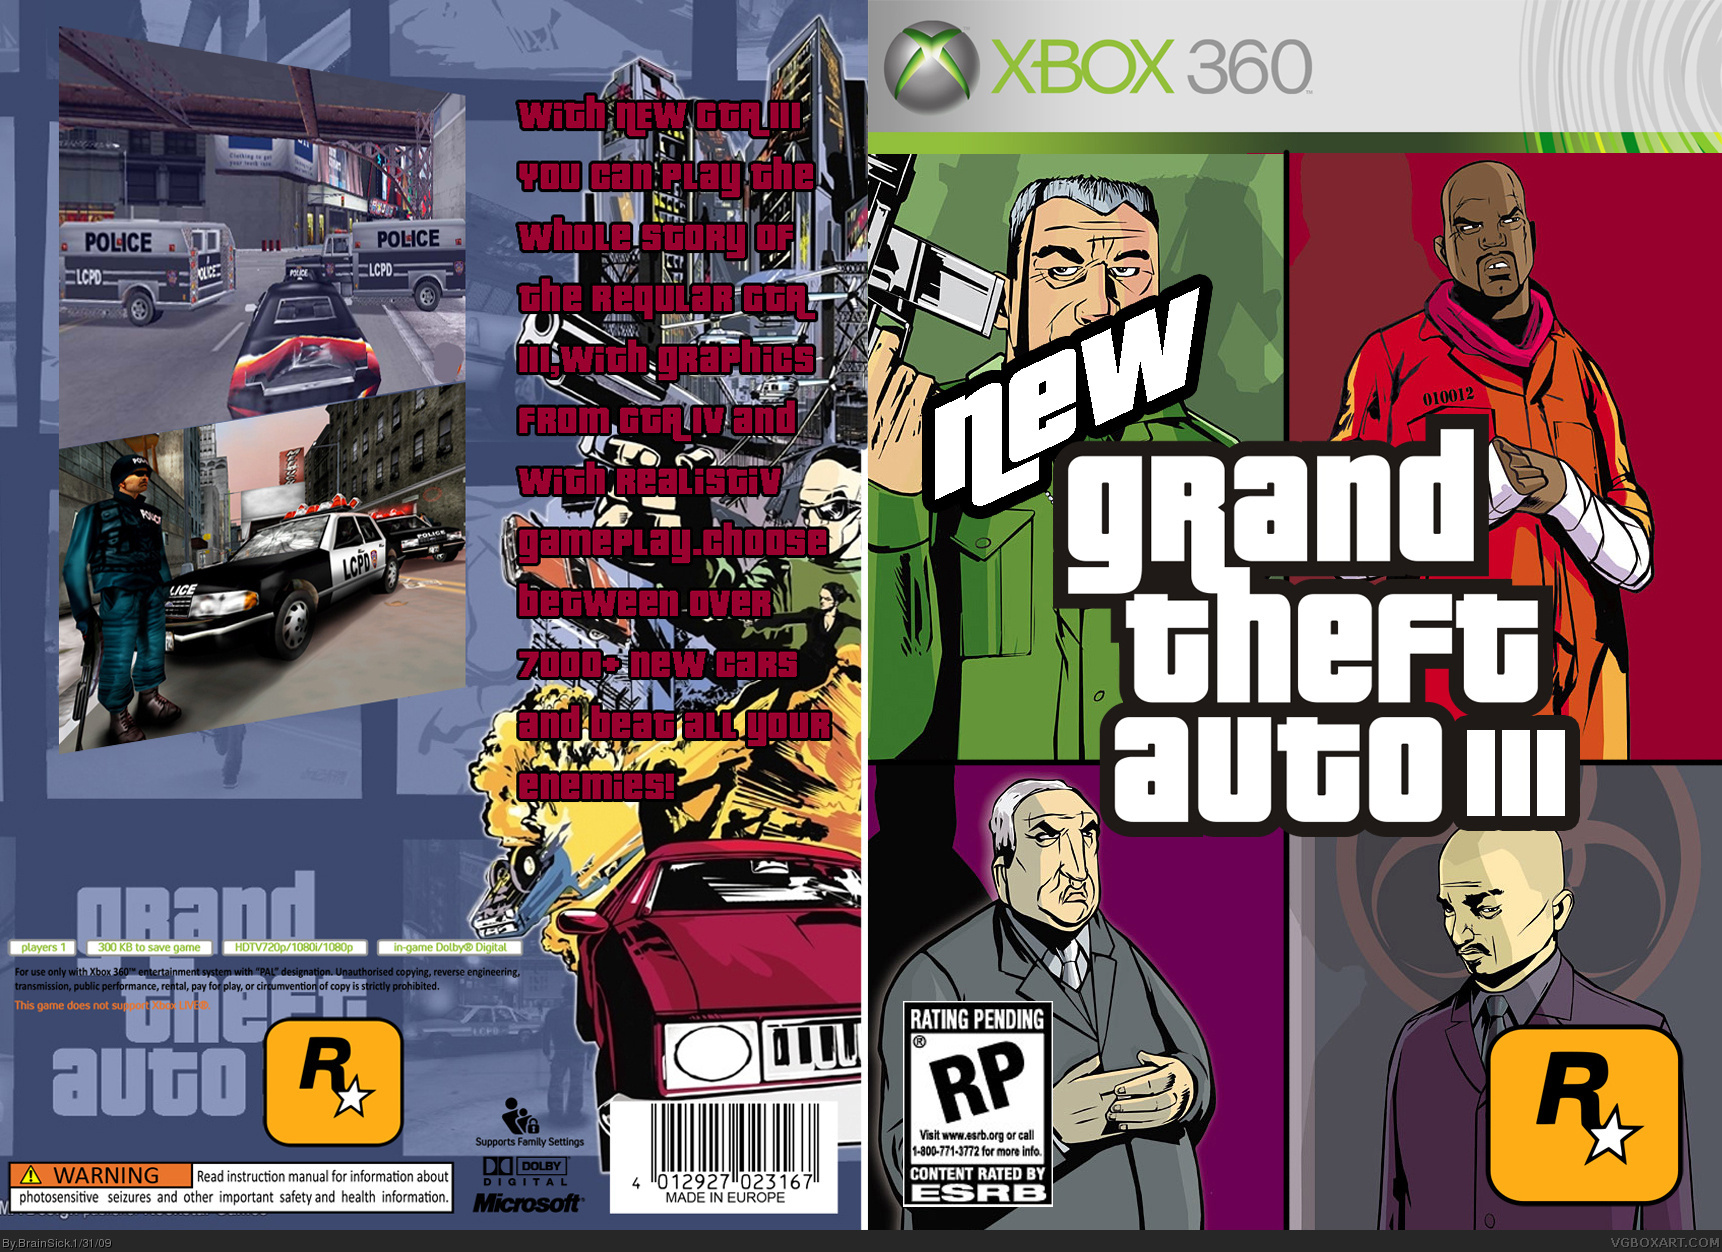 New Grand Theft Auto III box cover